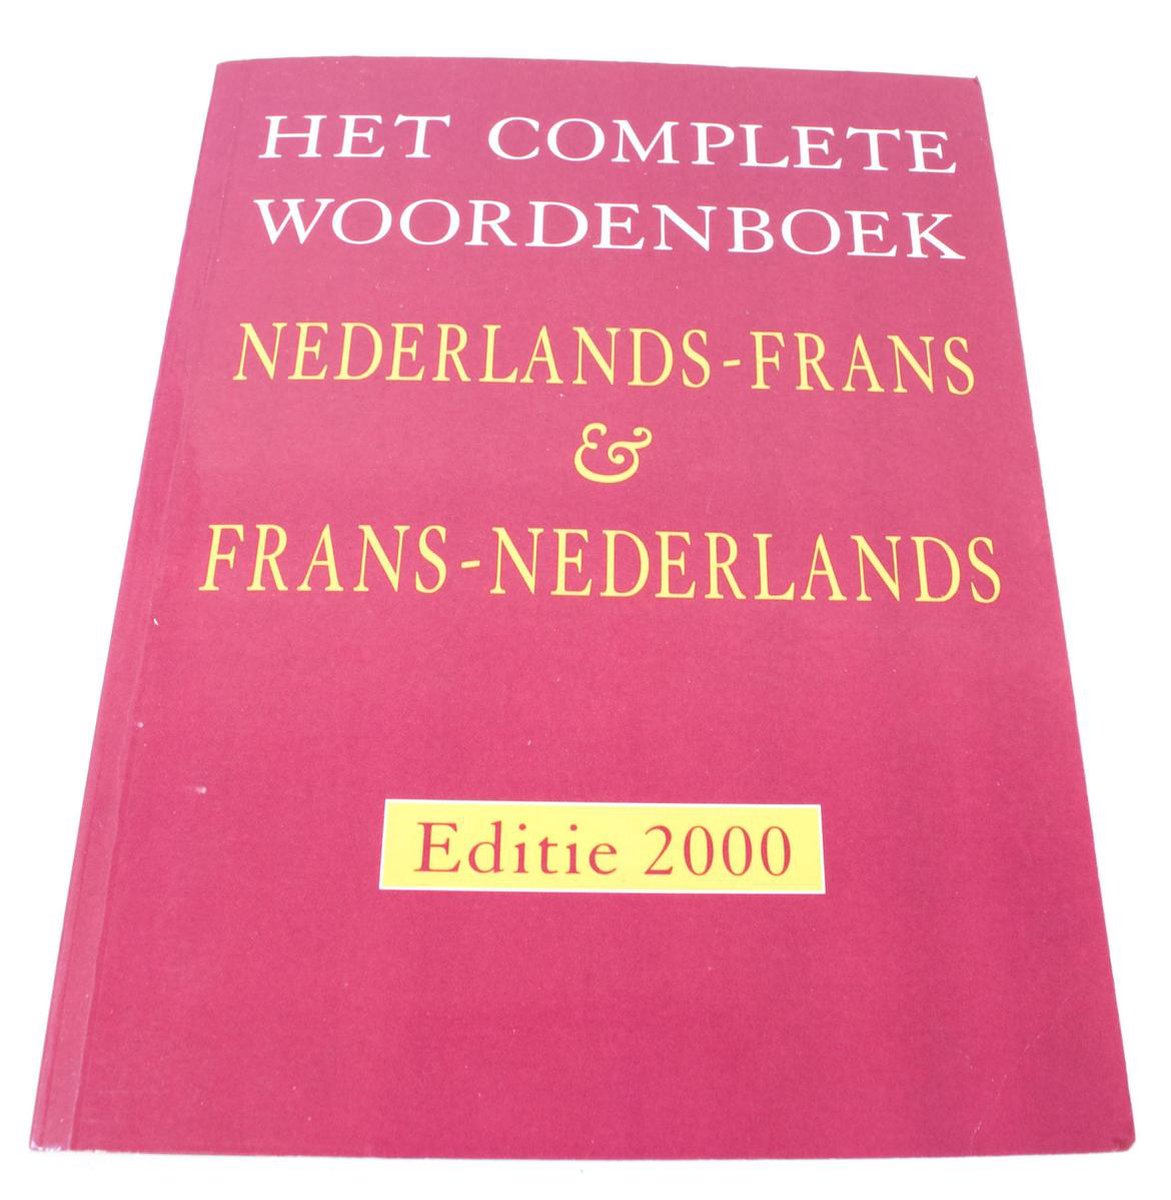 Het complete woordenboek Nederlands-Frans, Frans-Nederlands